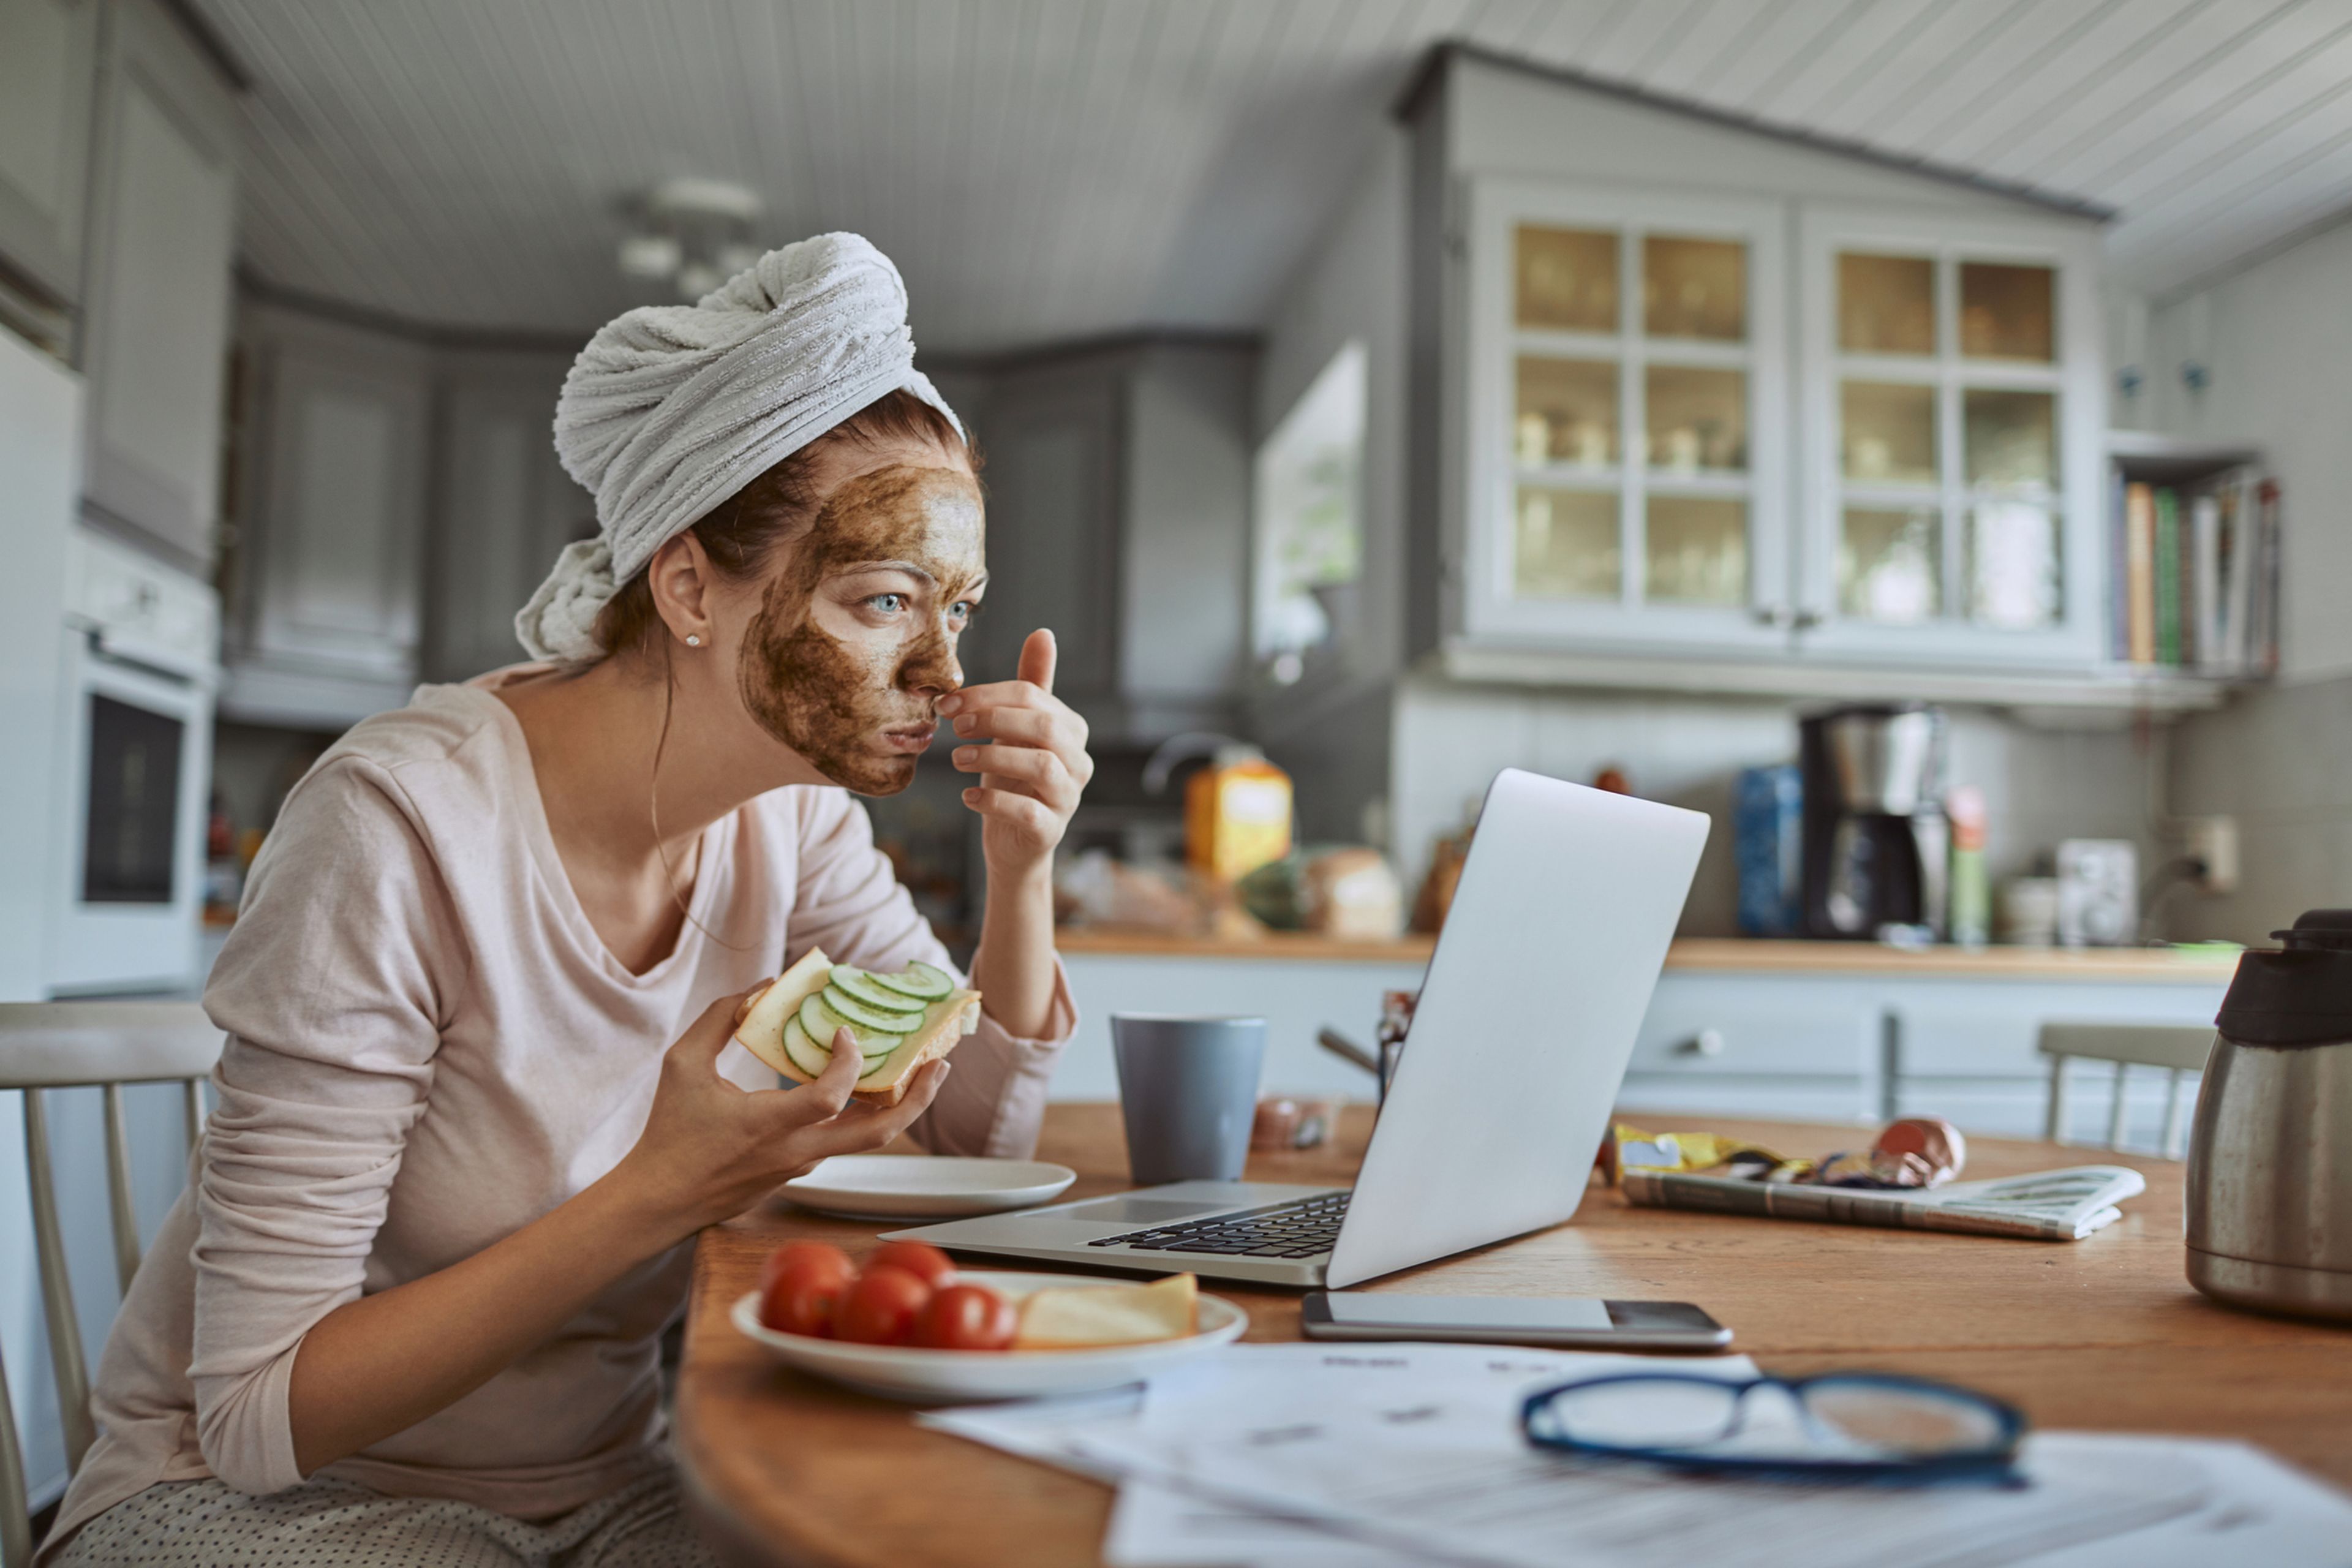 Una mujer come sano delante del ordenador con una mascarilla puesta.